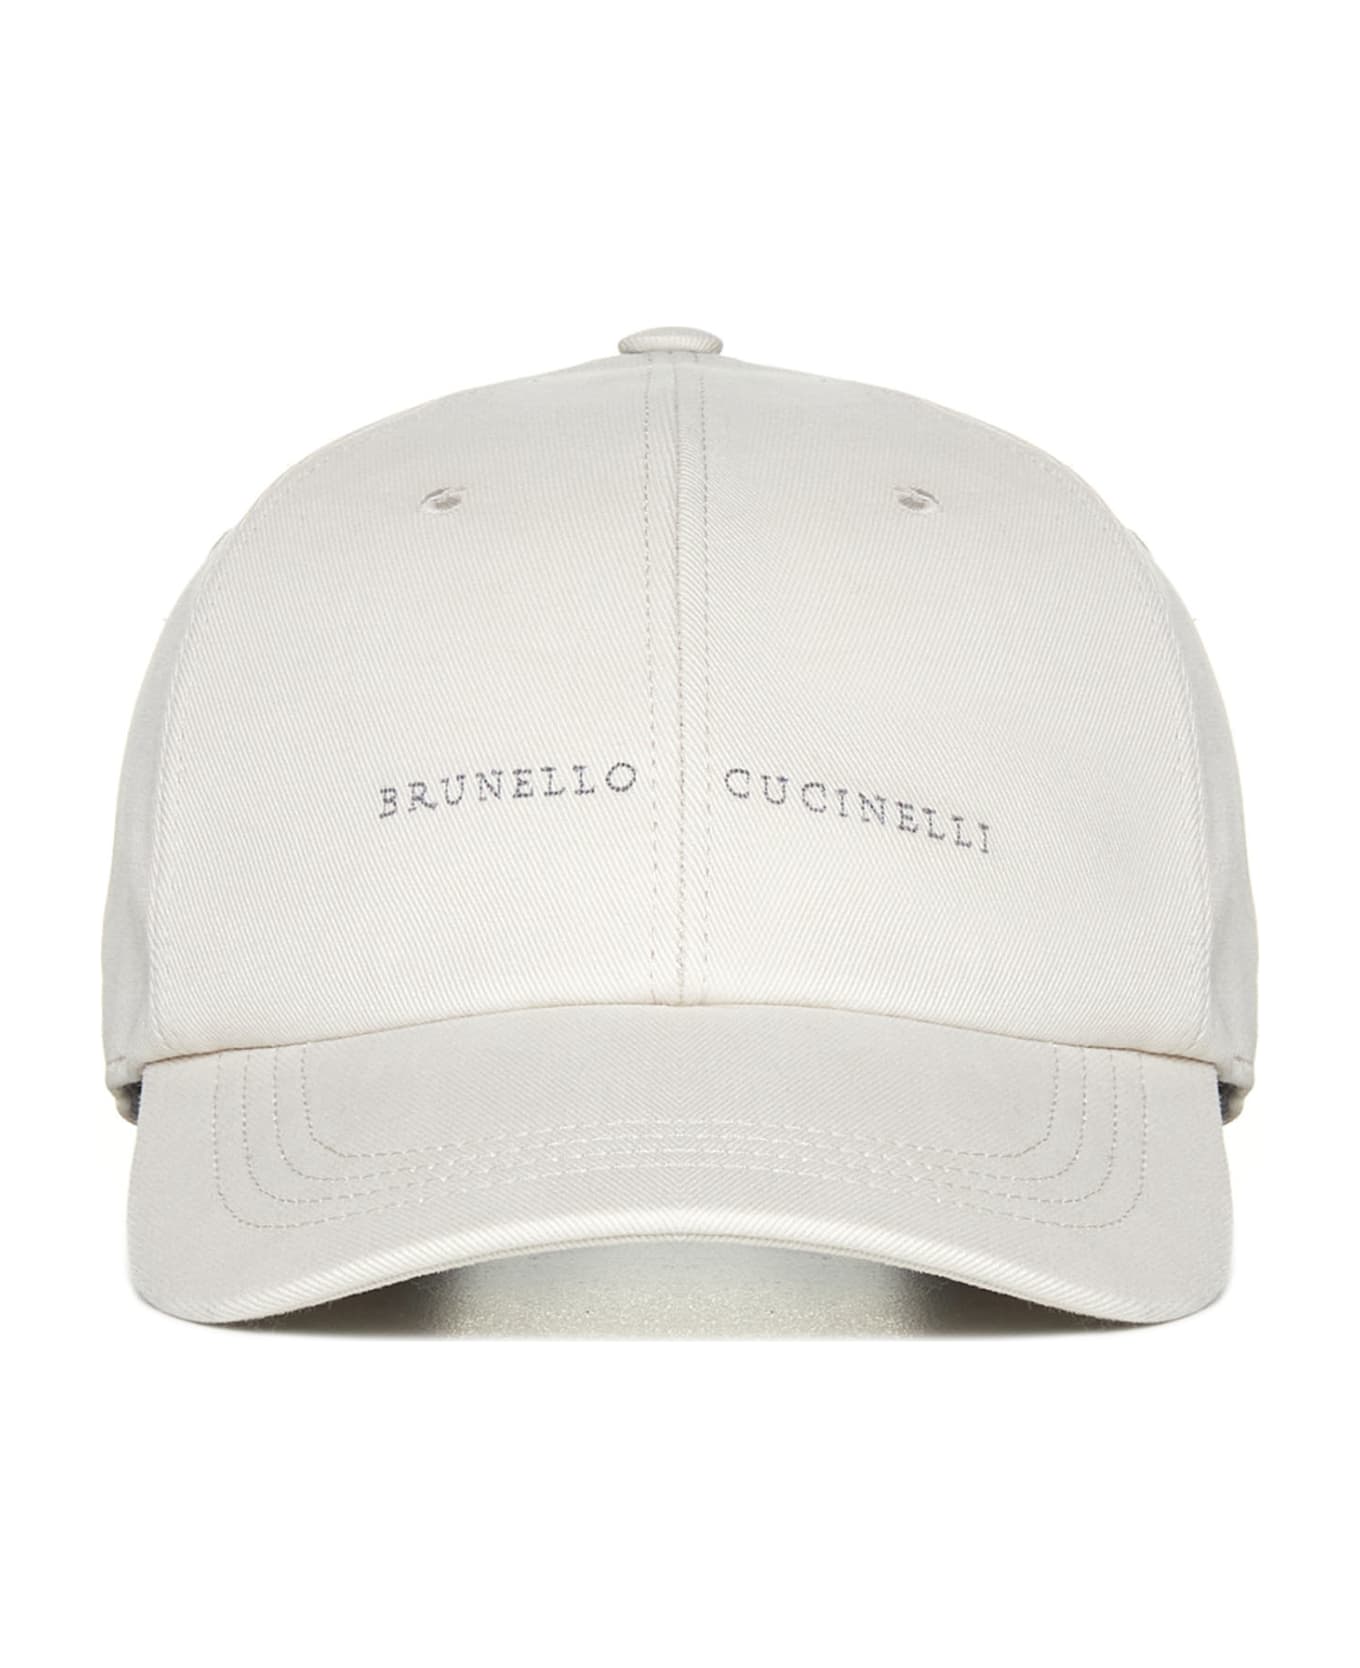 Brunello Cucinelli Logo Embroidered Baseball Cap - Avorio 帽子